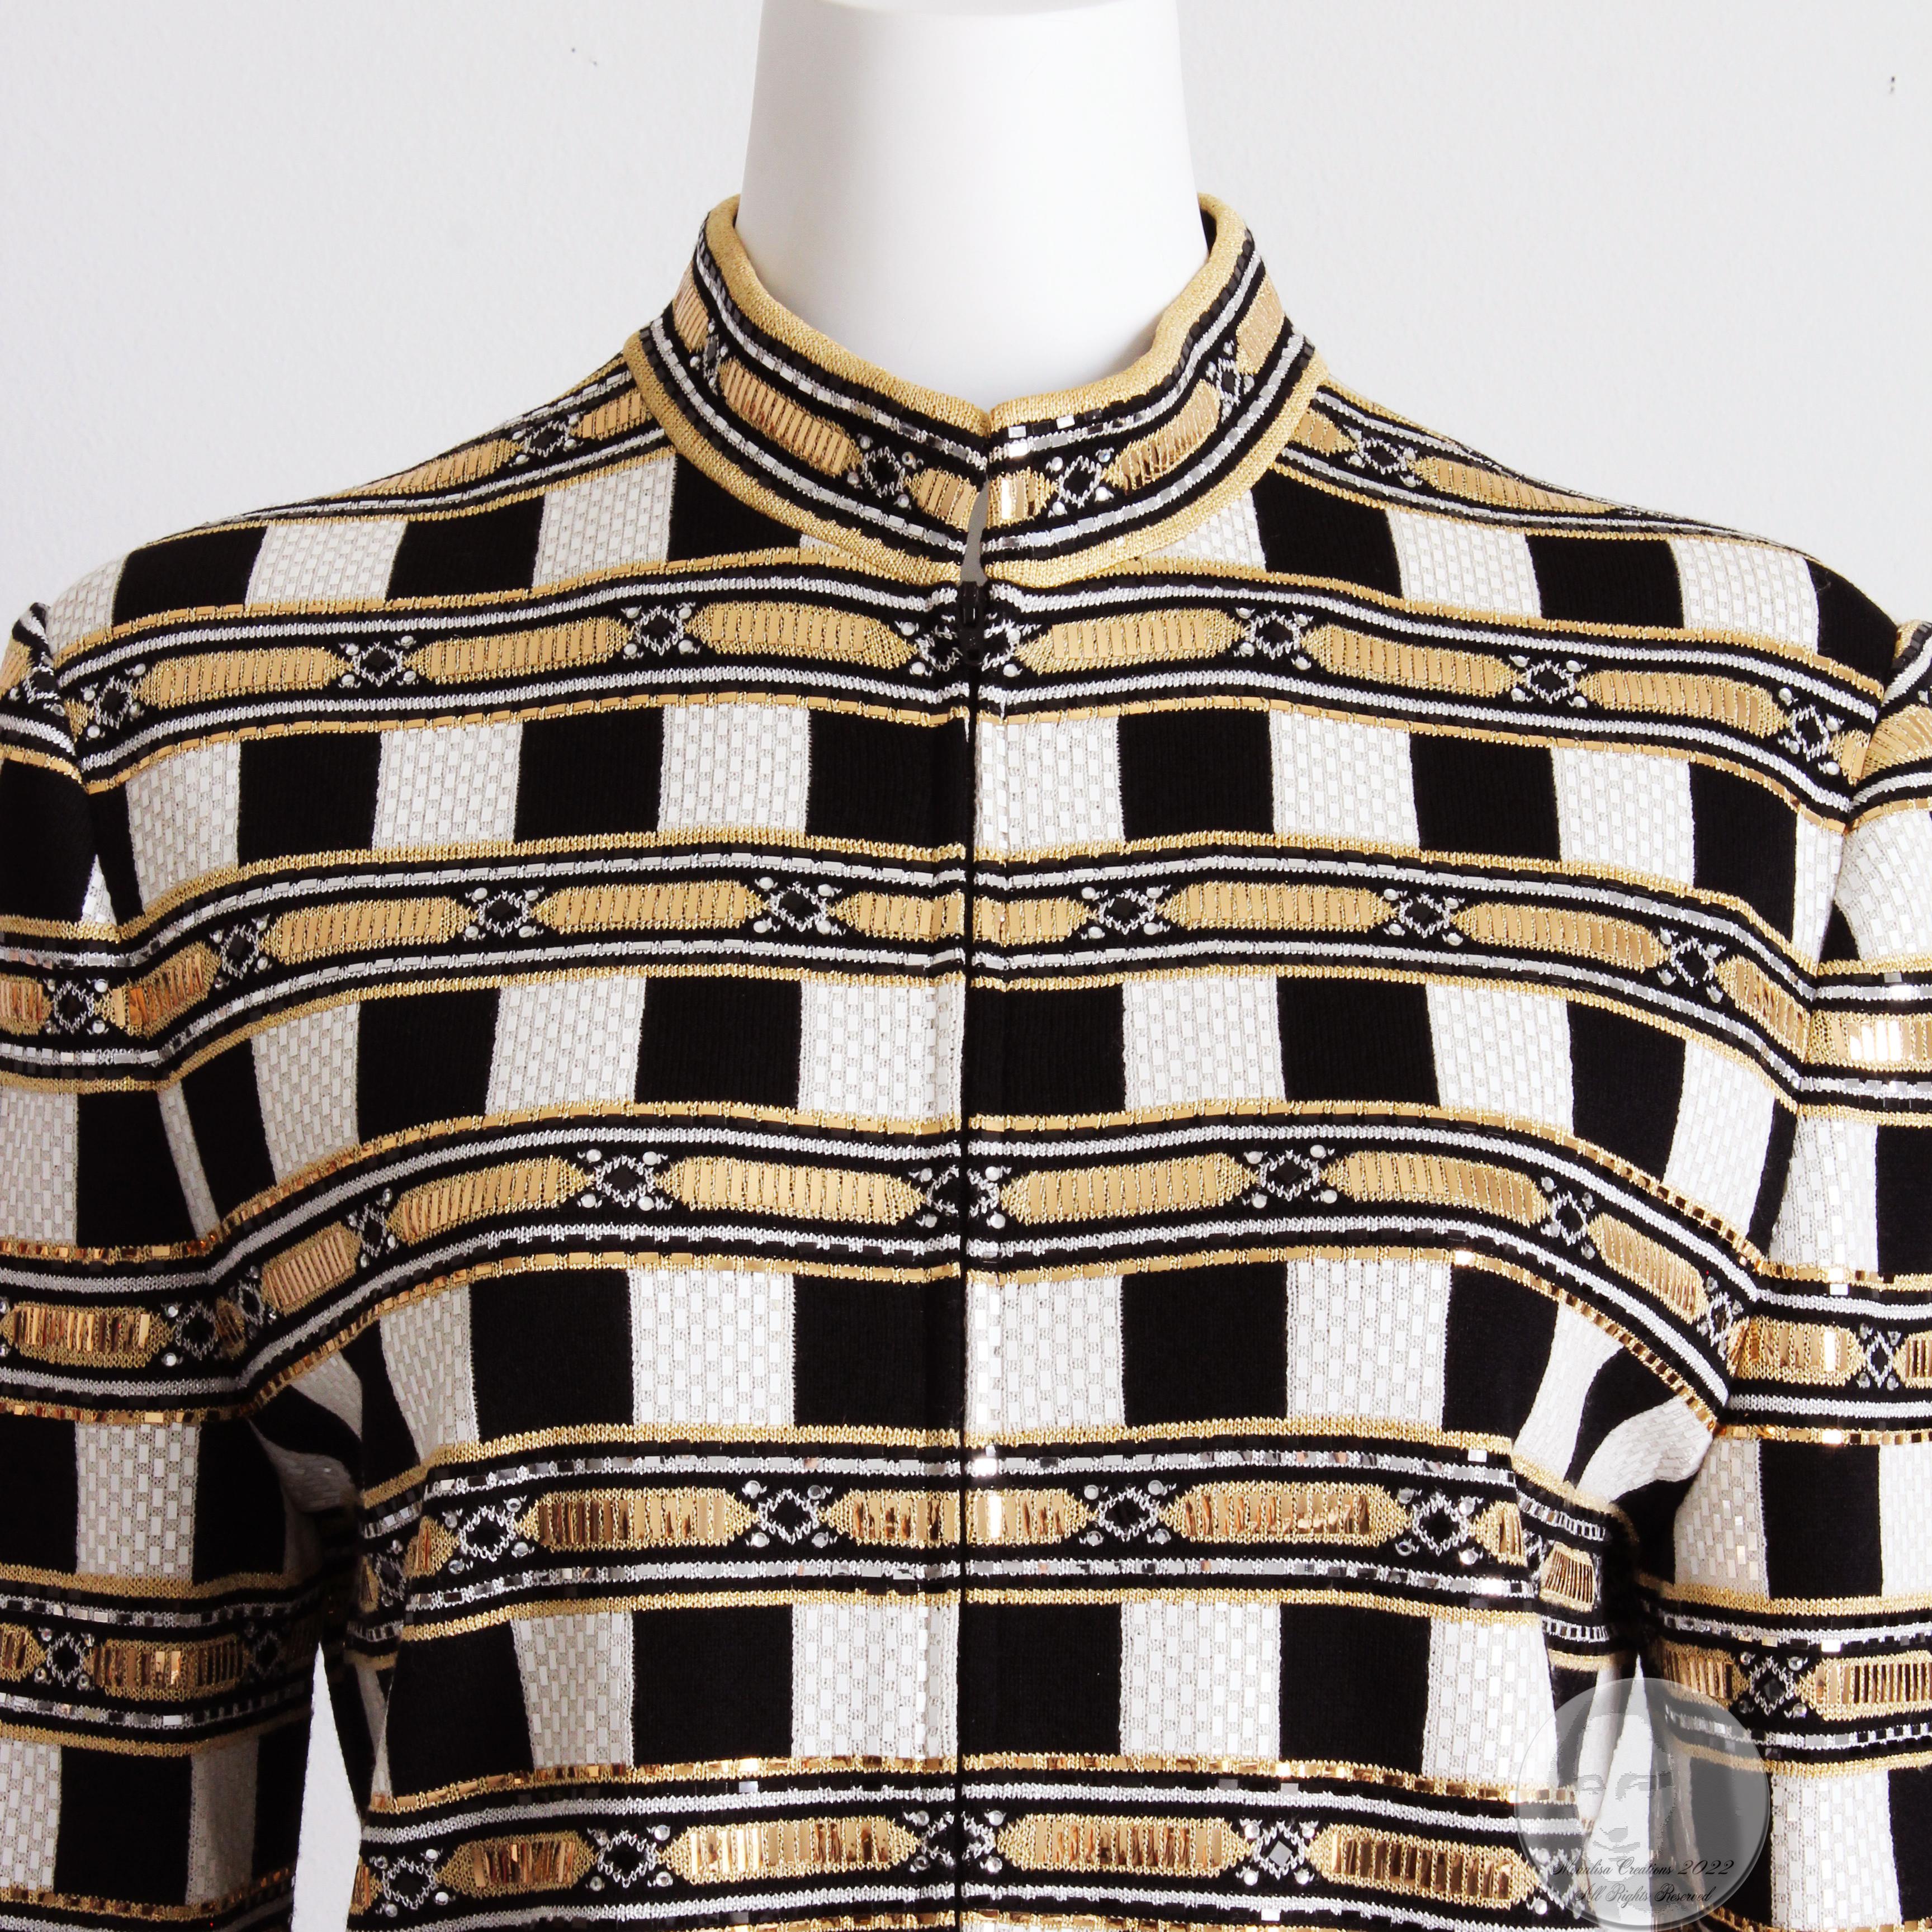 Women's or Men's St John Evening Jacket Embellished Knit Gold Black White Zip Front Vintage Sz 10 For Sale